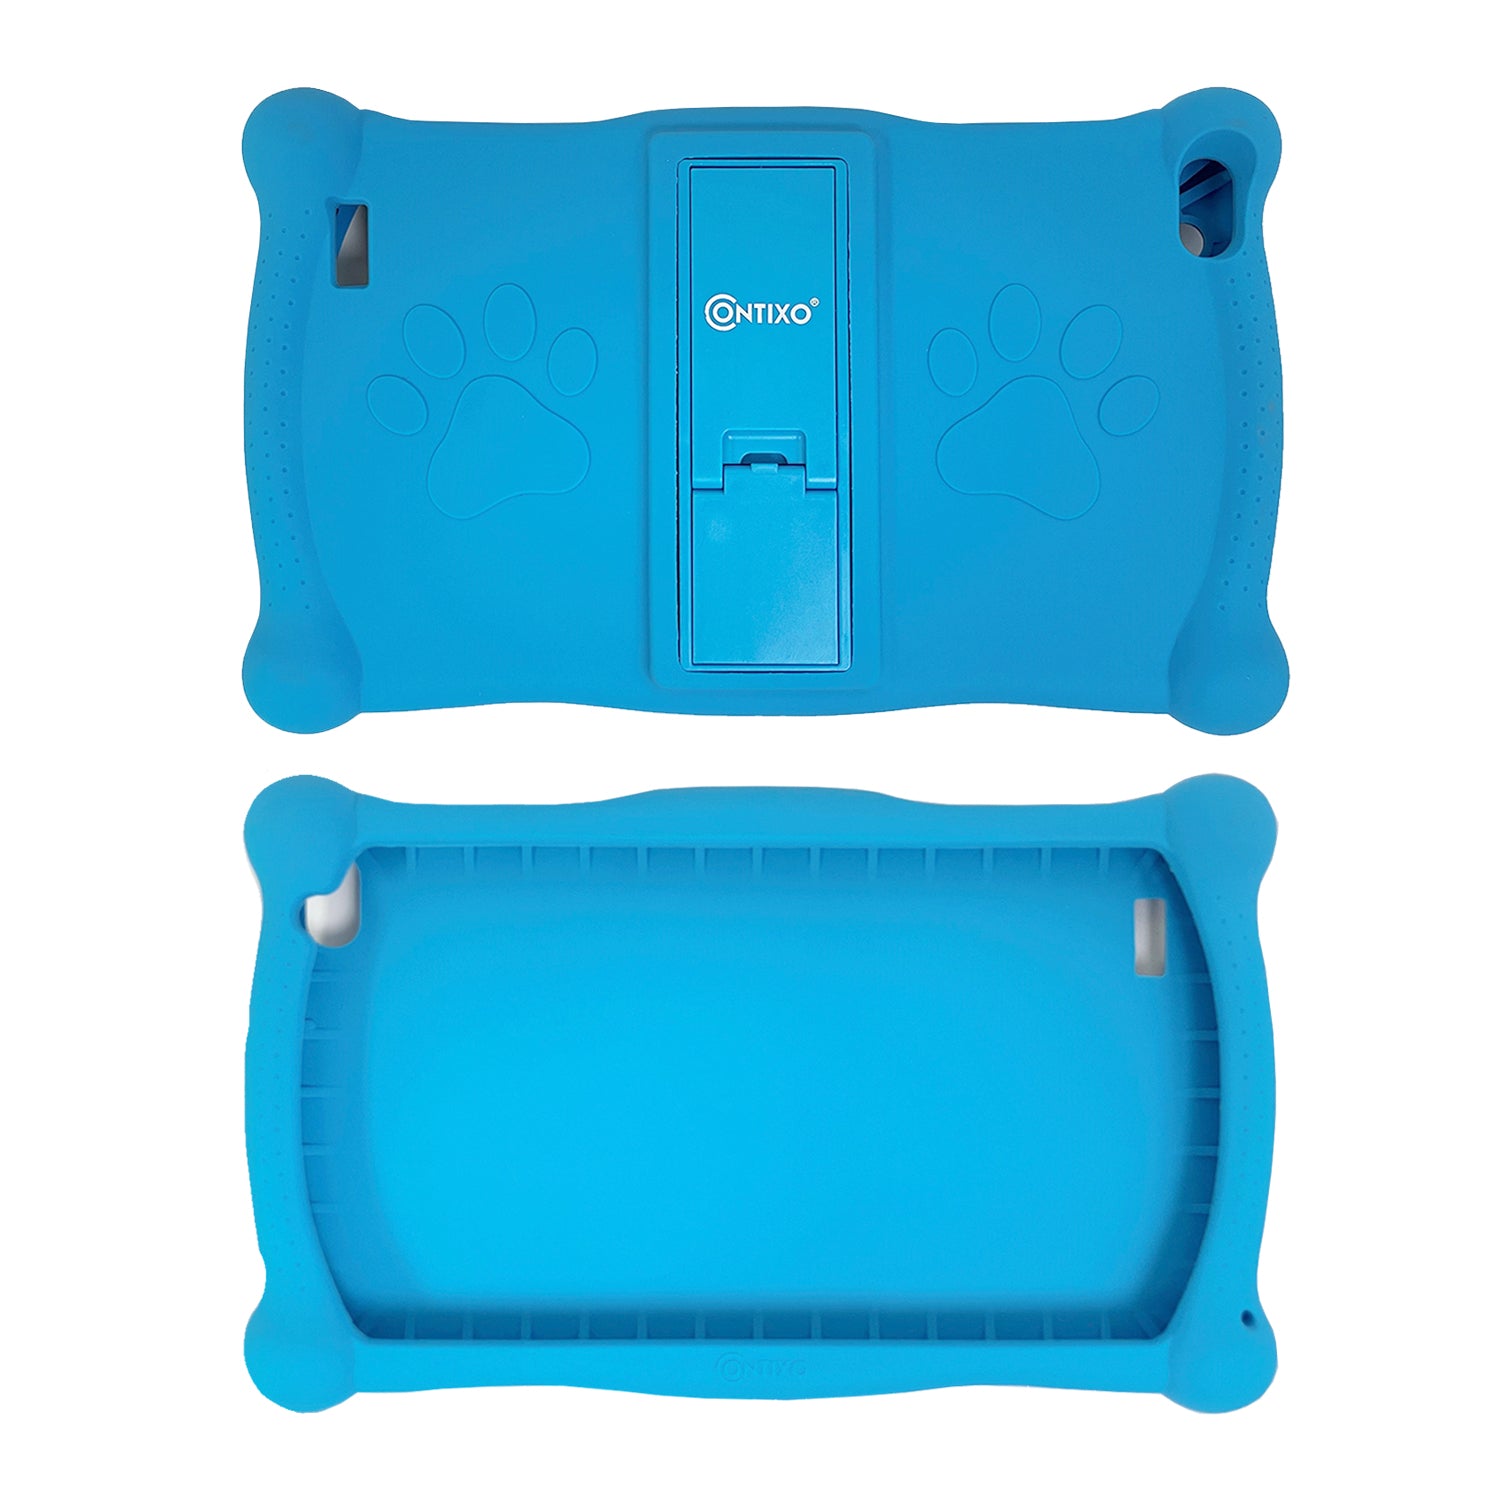 Contixo V10 Kids Tablet -Protective Silicon Case, Multi-Color